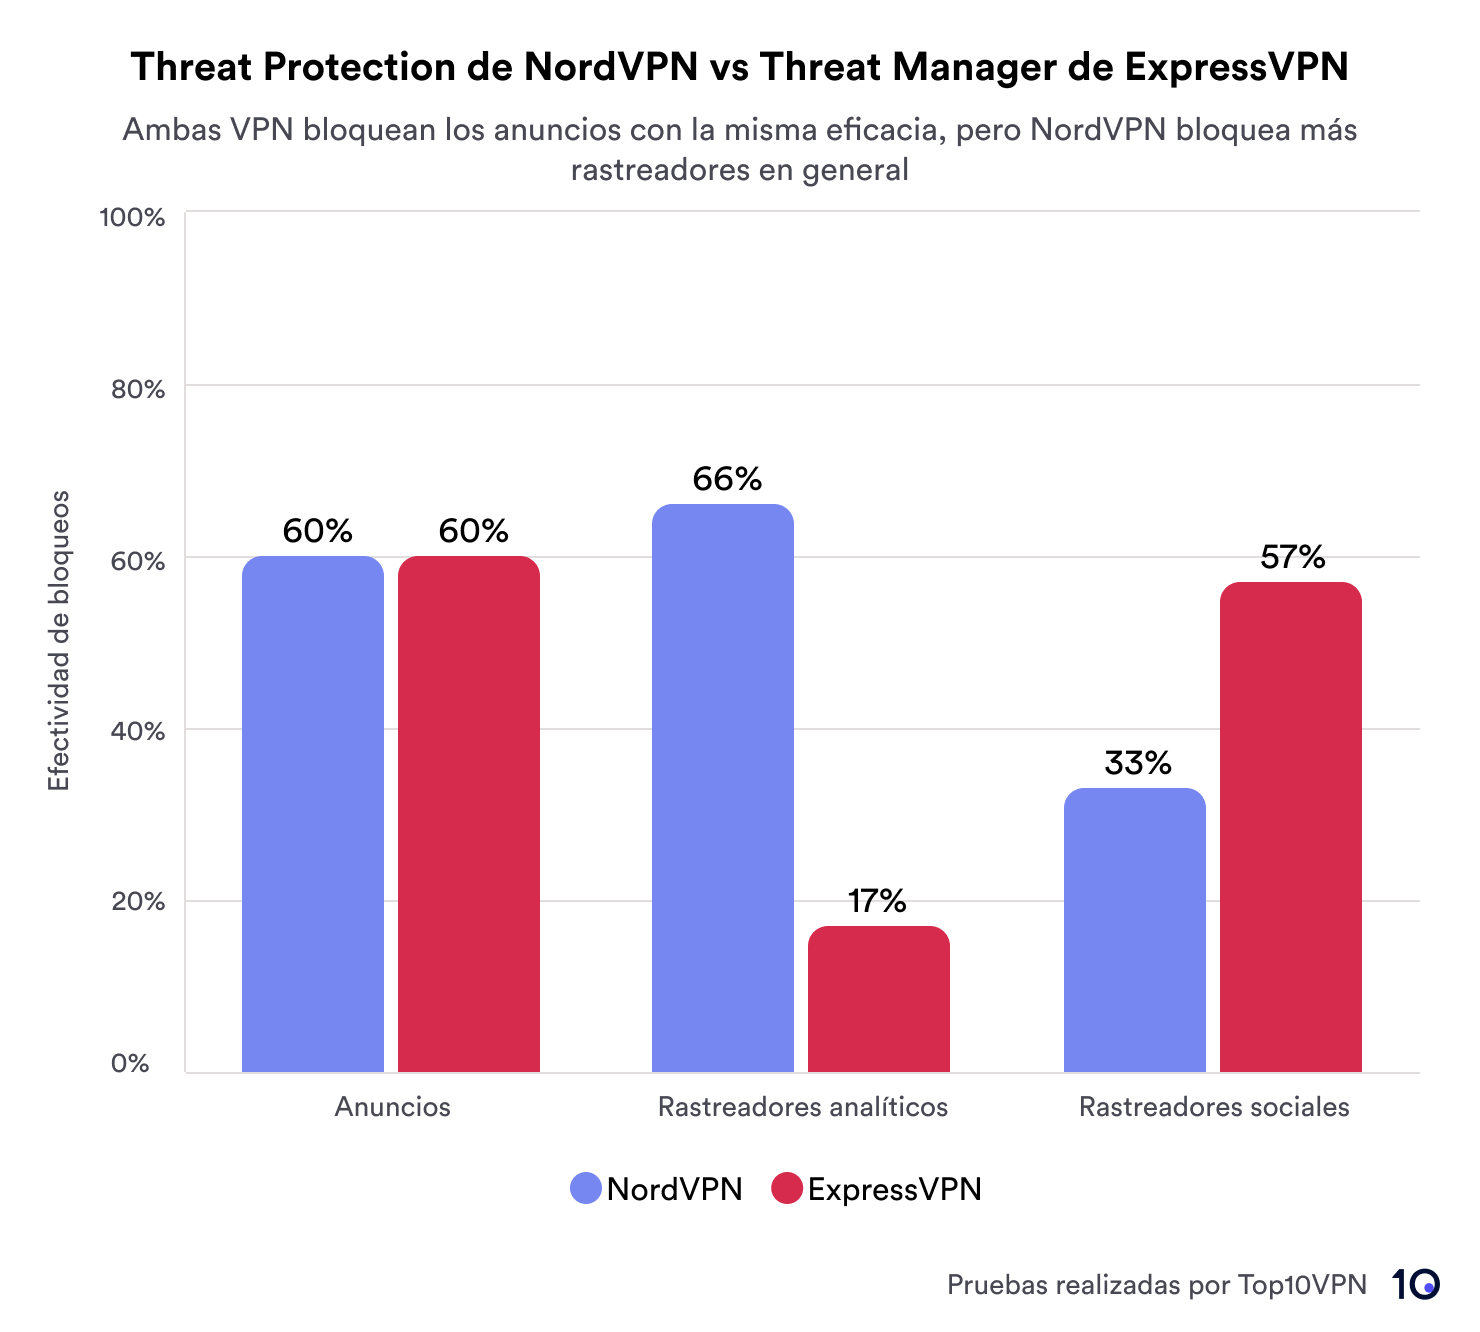 Un gráfico de barras que compara la eficacia de los bloqueadores Threat Protection de NordVPN y Threat Manager de ExpressVPN en el bloqueo de anuncios, rastreadores analíticos y rastreadores en redes sociales. Tanto NordVPN como ExpressVPN bloquean los anuncios con una tasa de efectividad de 60%. NordVPN supera a ExpressVPN en el bloqueo de rastreadores analíticos (un 66% en comparación con un 17%) y en el bloqueo de rastreadores en redes sociales (un 57% contra un 33%).